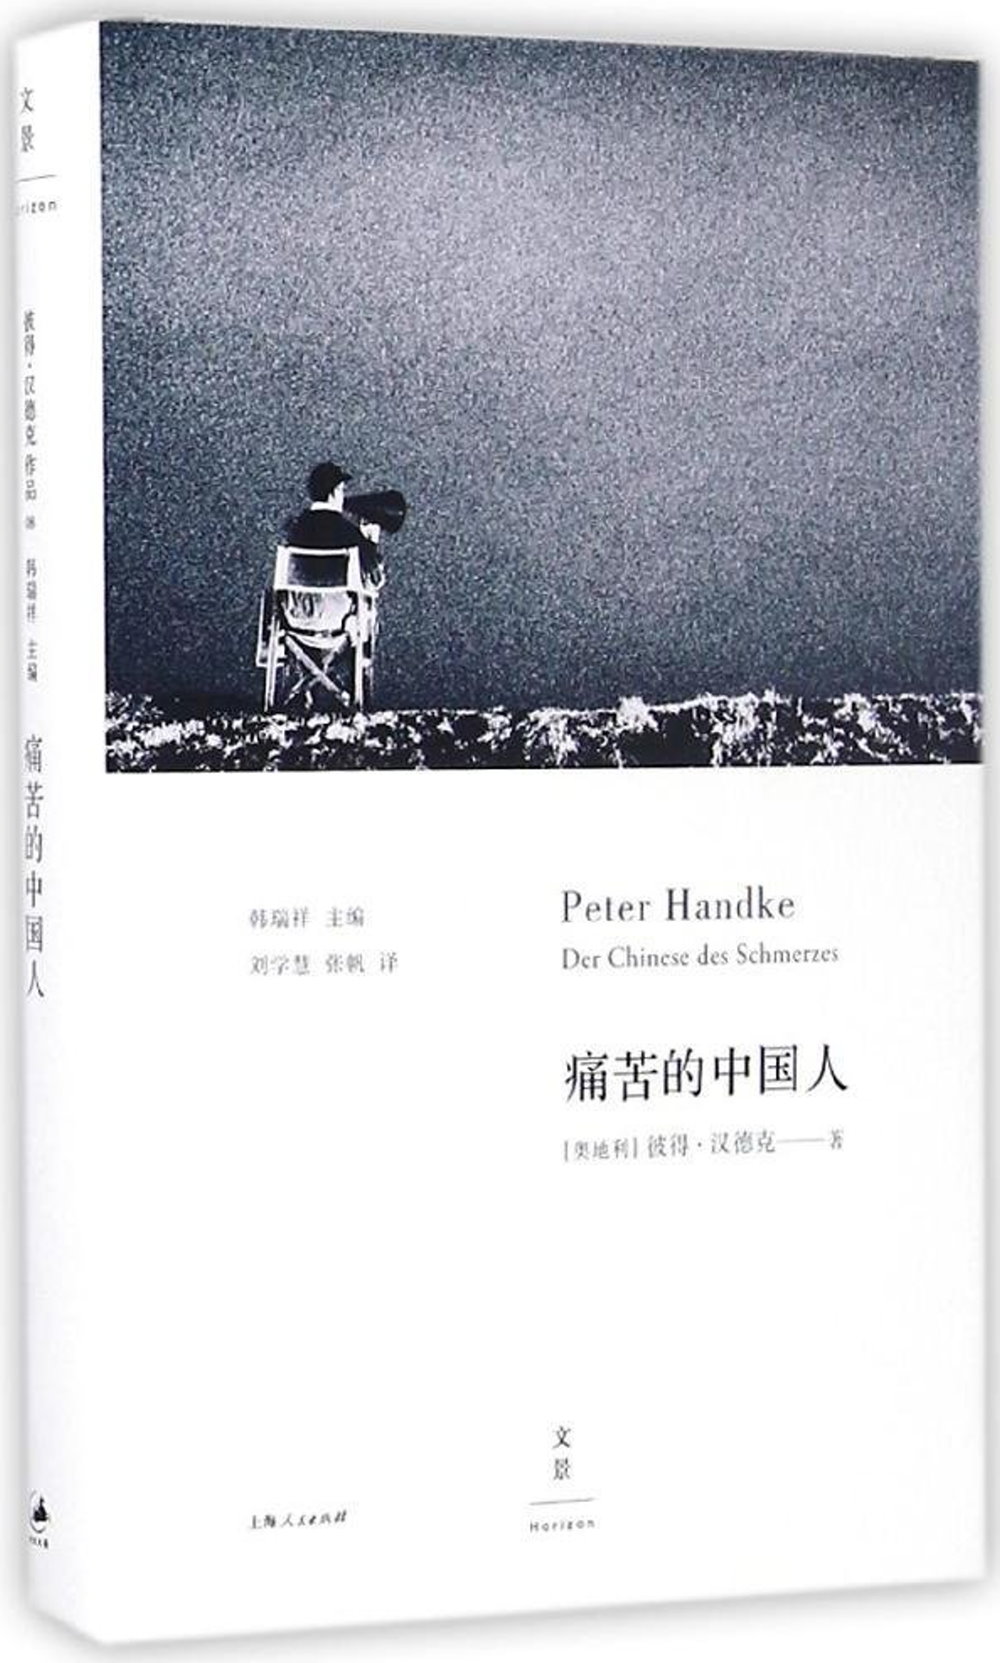 痛苦的中國人(2019年諾貝爾文學獎獲獎者作品)